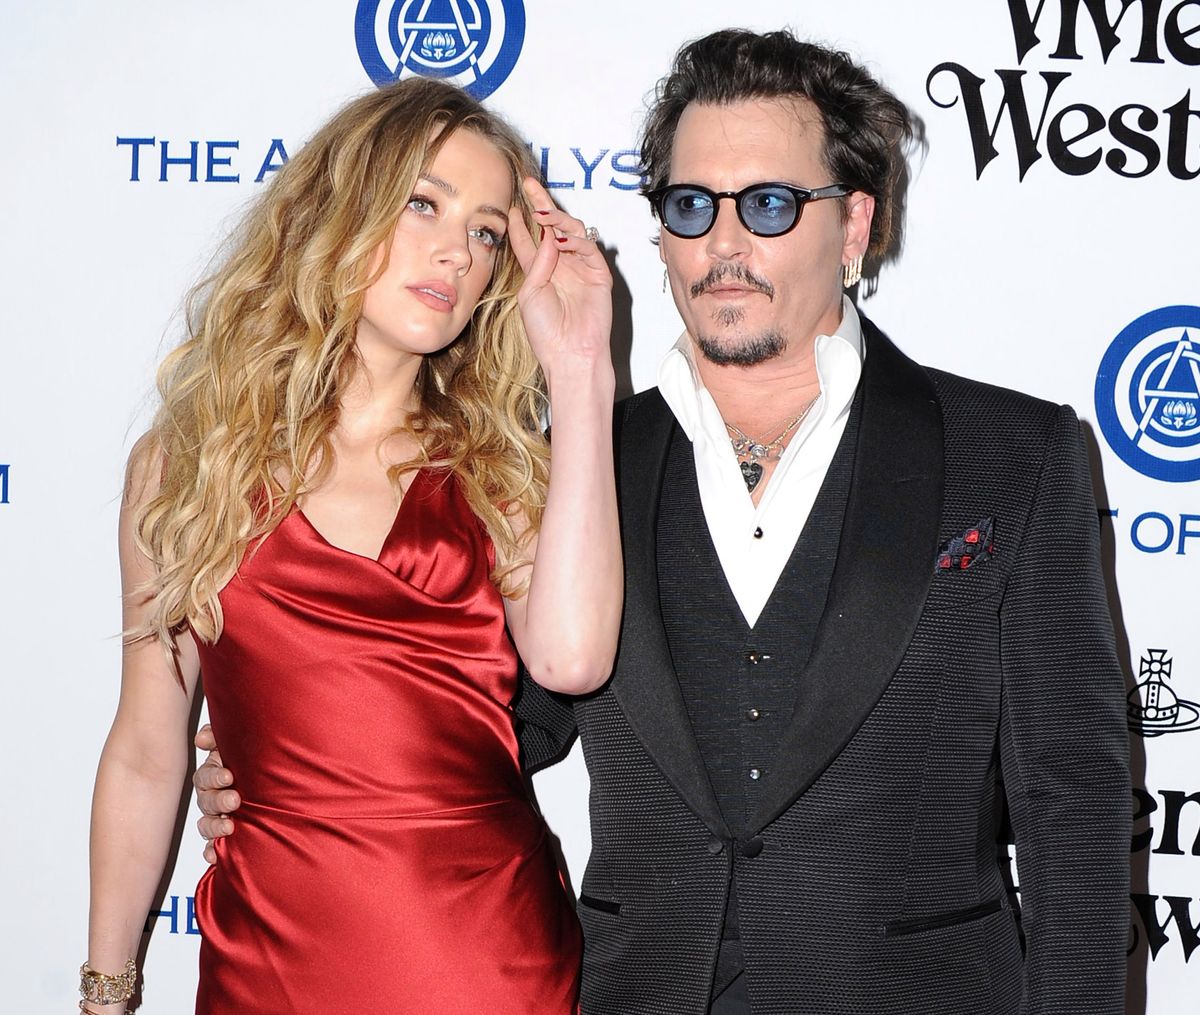 Amber Heard, była żona Johnny'ego Deppa, o przemocy domowej! To jej pierwsza wypowiedź od rozwodu